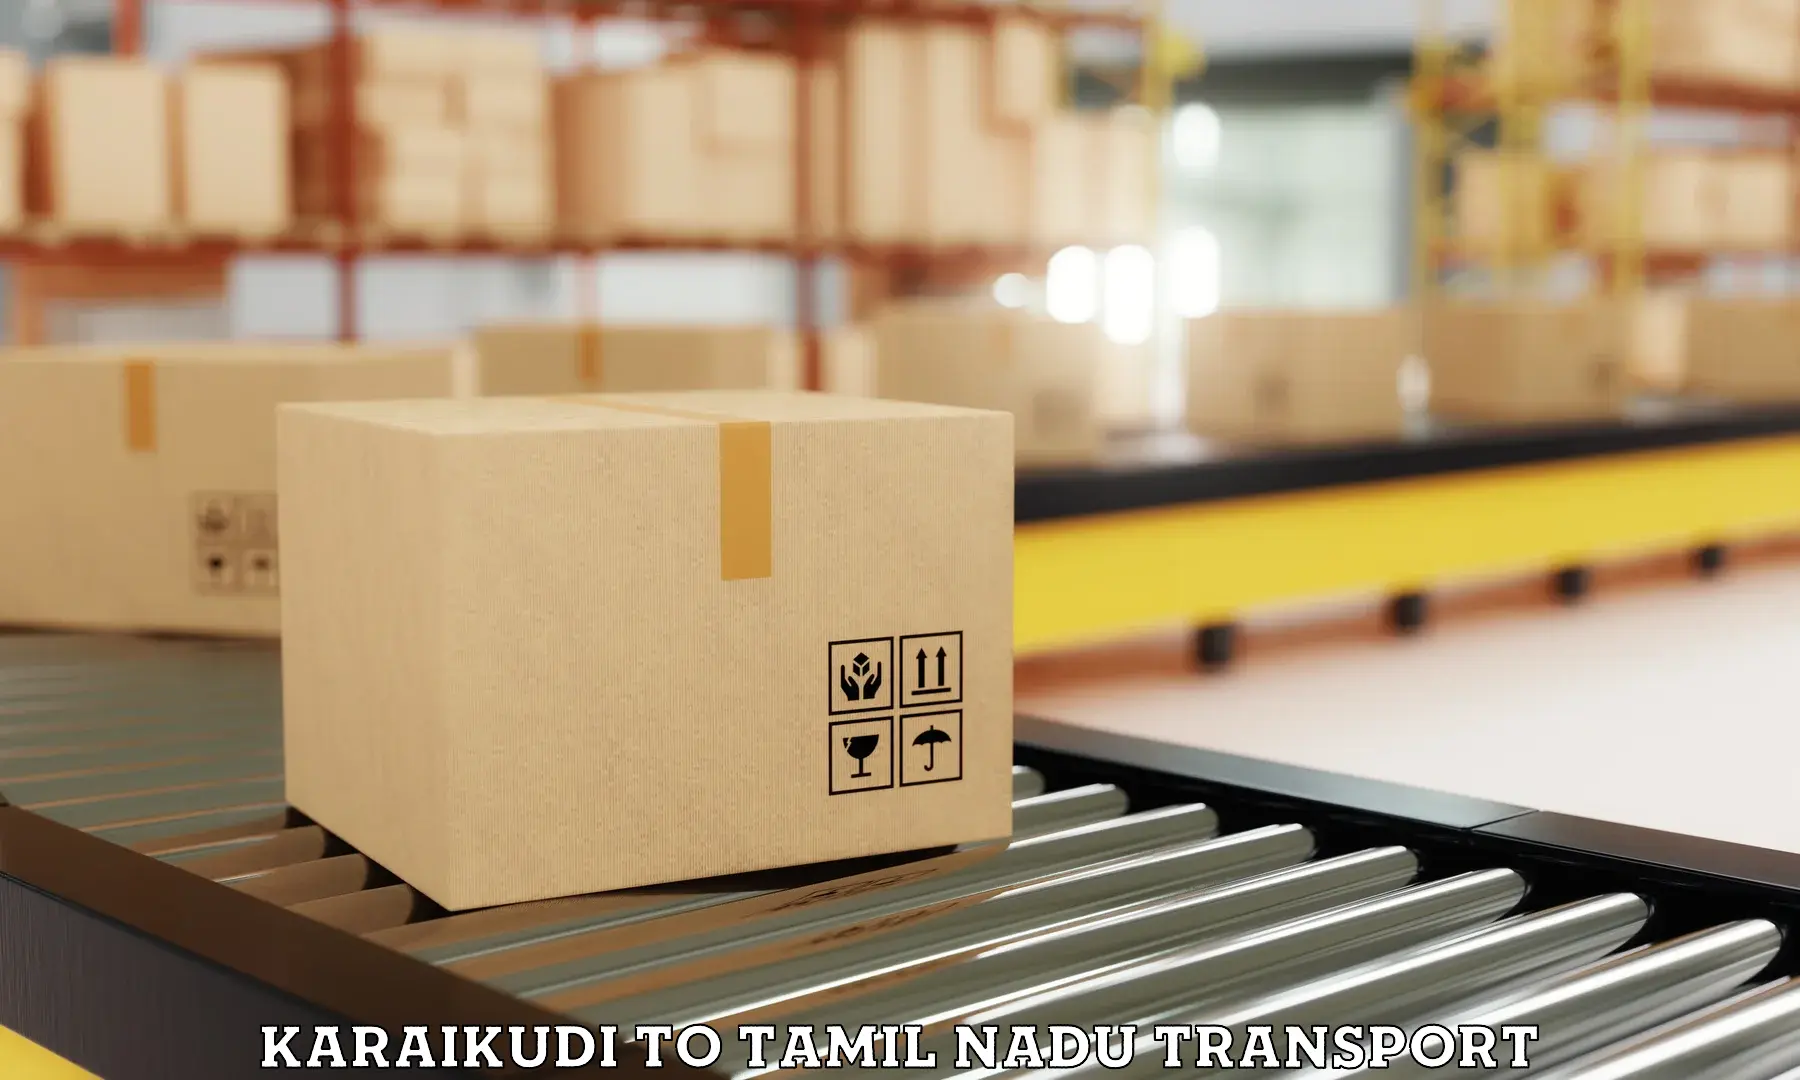 International cargo transportation services Karaikudi to Perambur